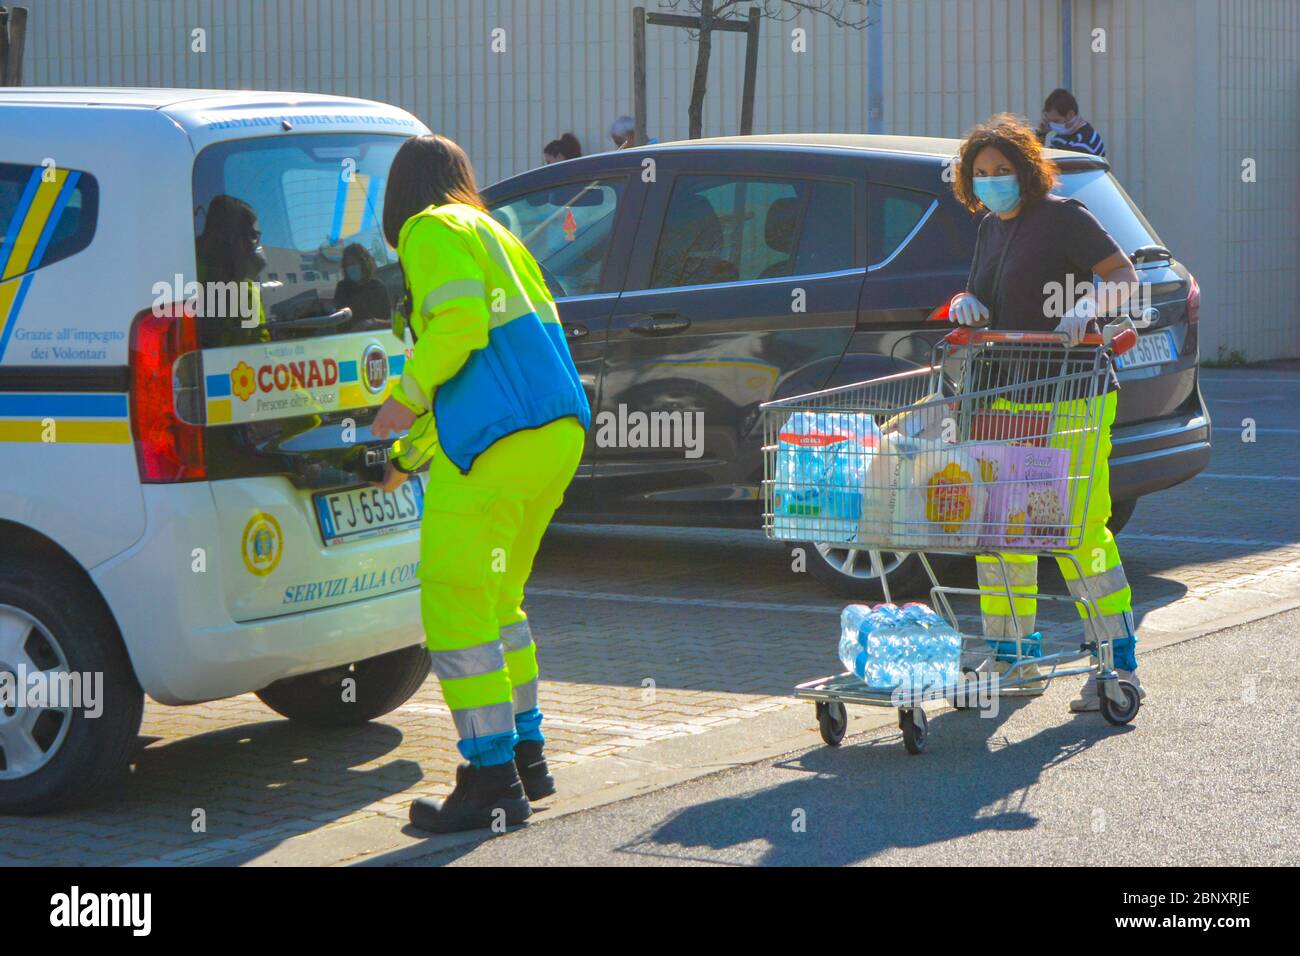 Italia, 04/08/20: Due paramedici volontari italiani in uniforme indossando maschera protettiva del coronavirus fanno generi alimentari per gli anziani e i malati. Pandemia quotidiana Foto Stock